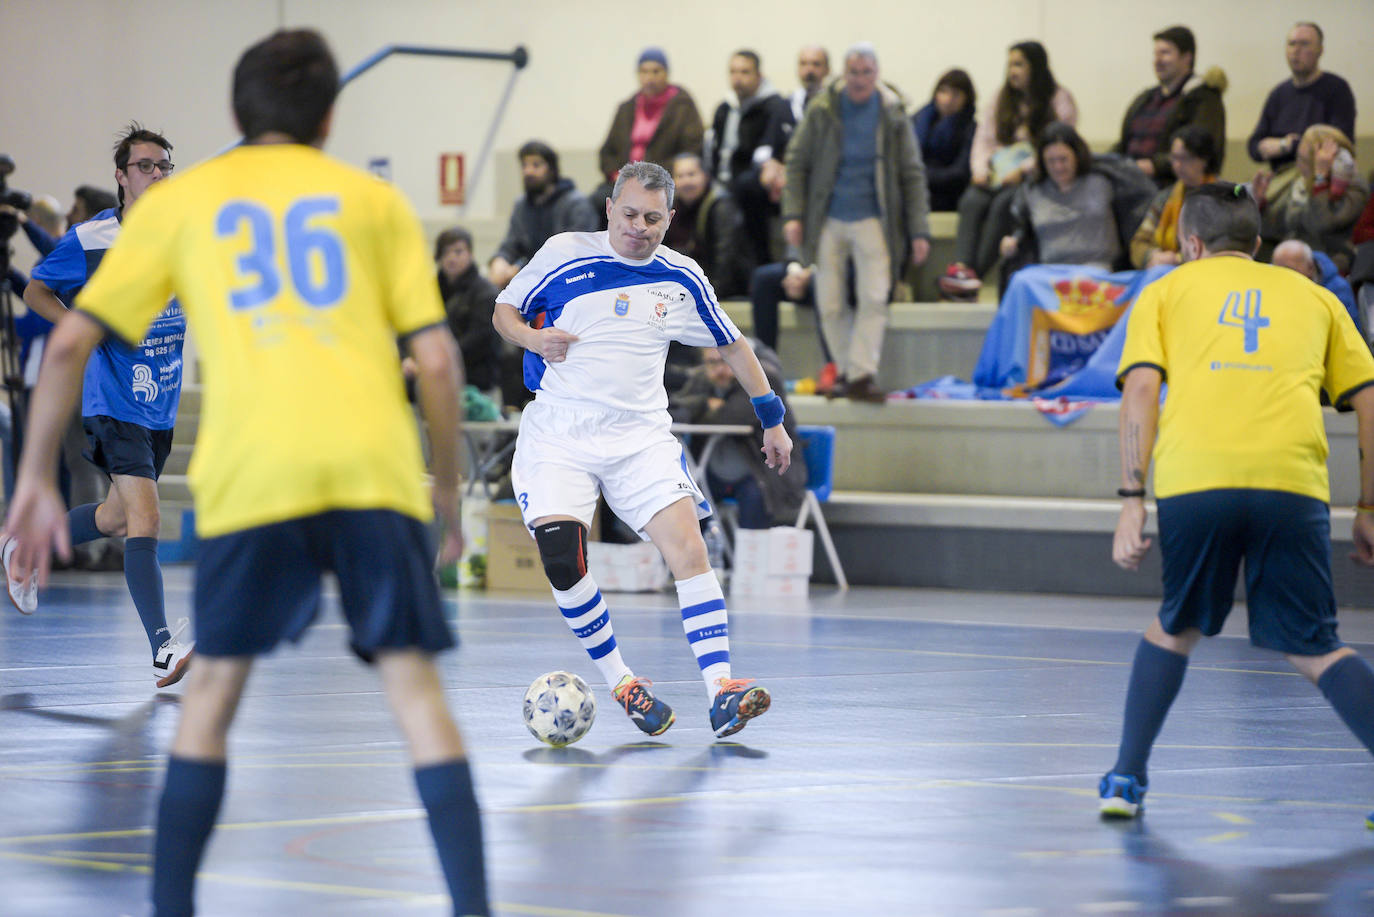 El polideportivo de Teatinos acogió un partido de fútbol sala para dar visibilidad y normalizar la enfermedad mental